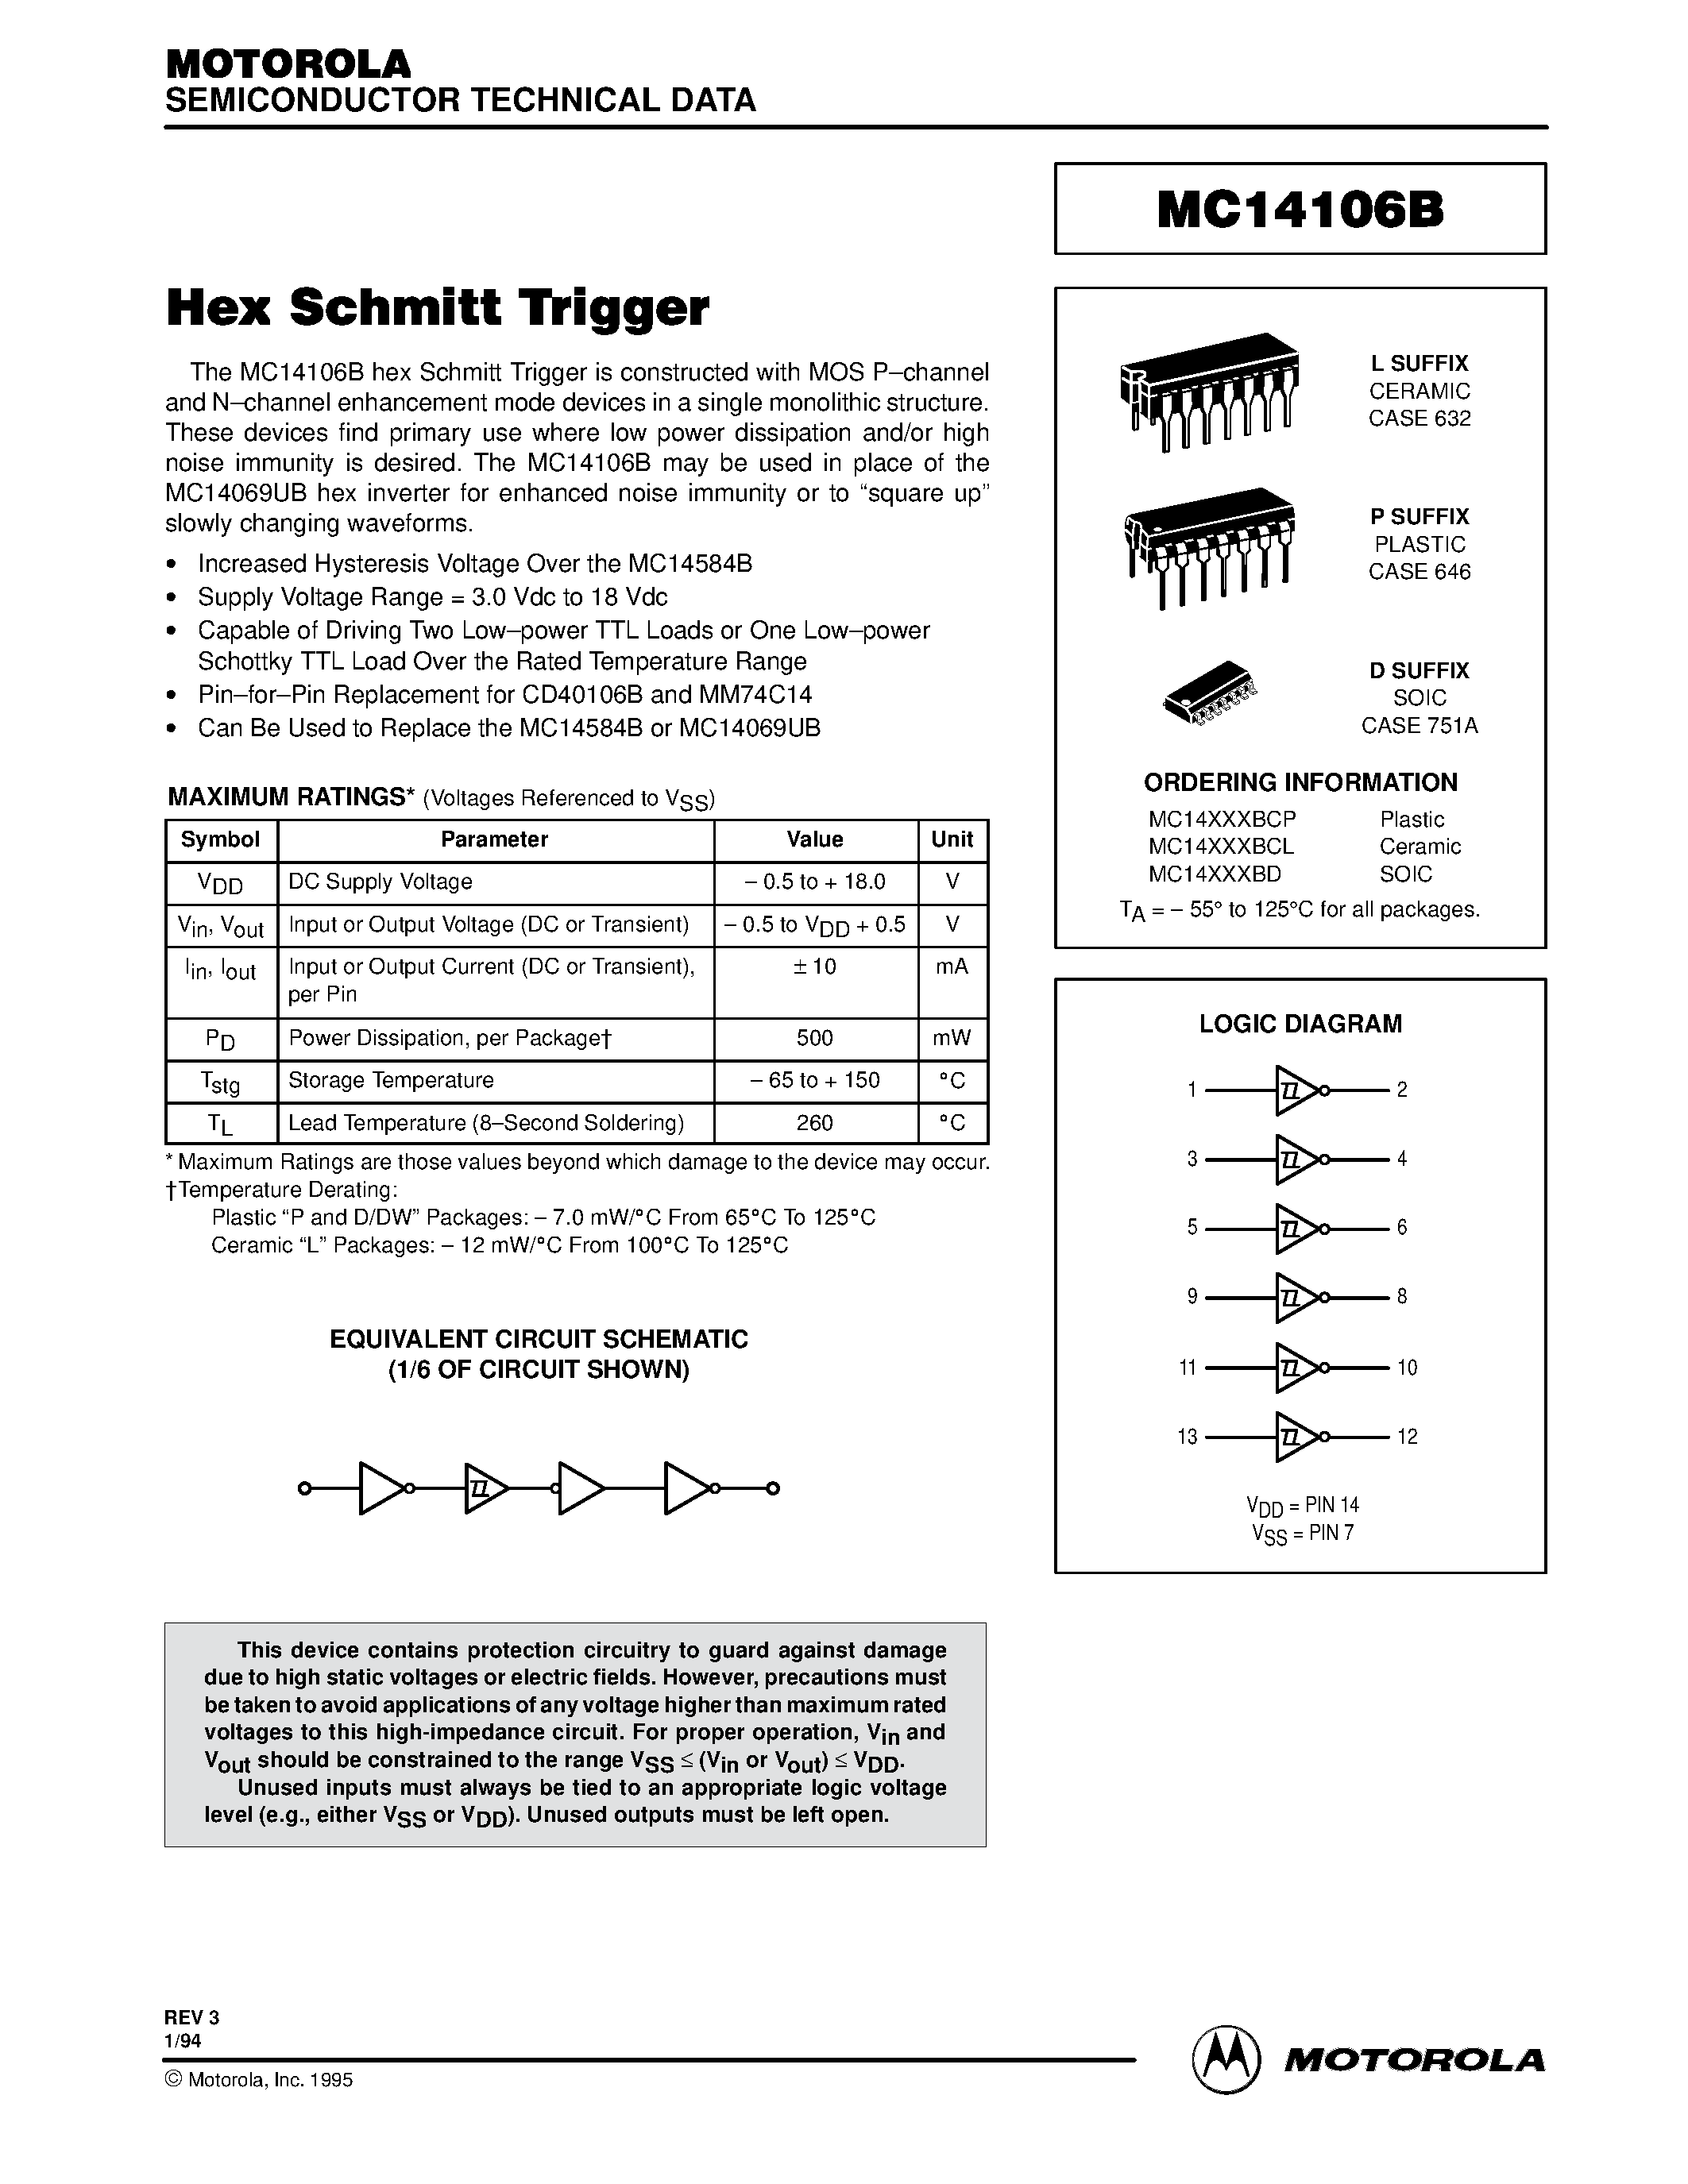 Datasheet MC14106BD - Hex Schmitt Trigger page 1